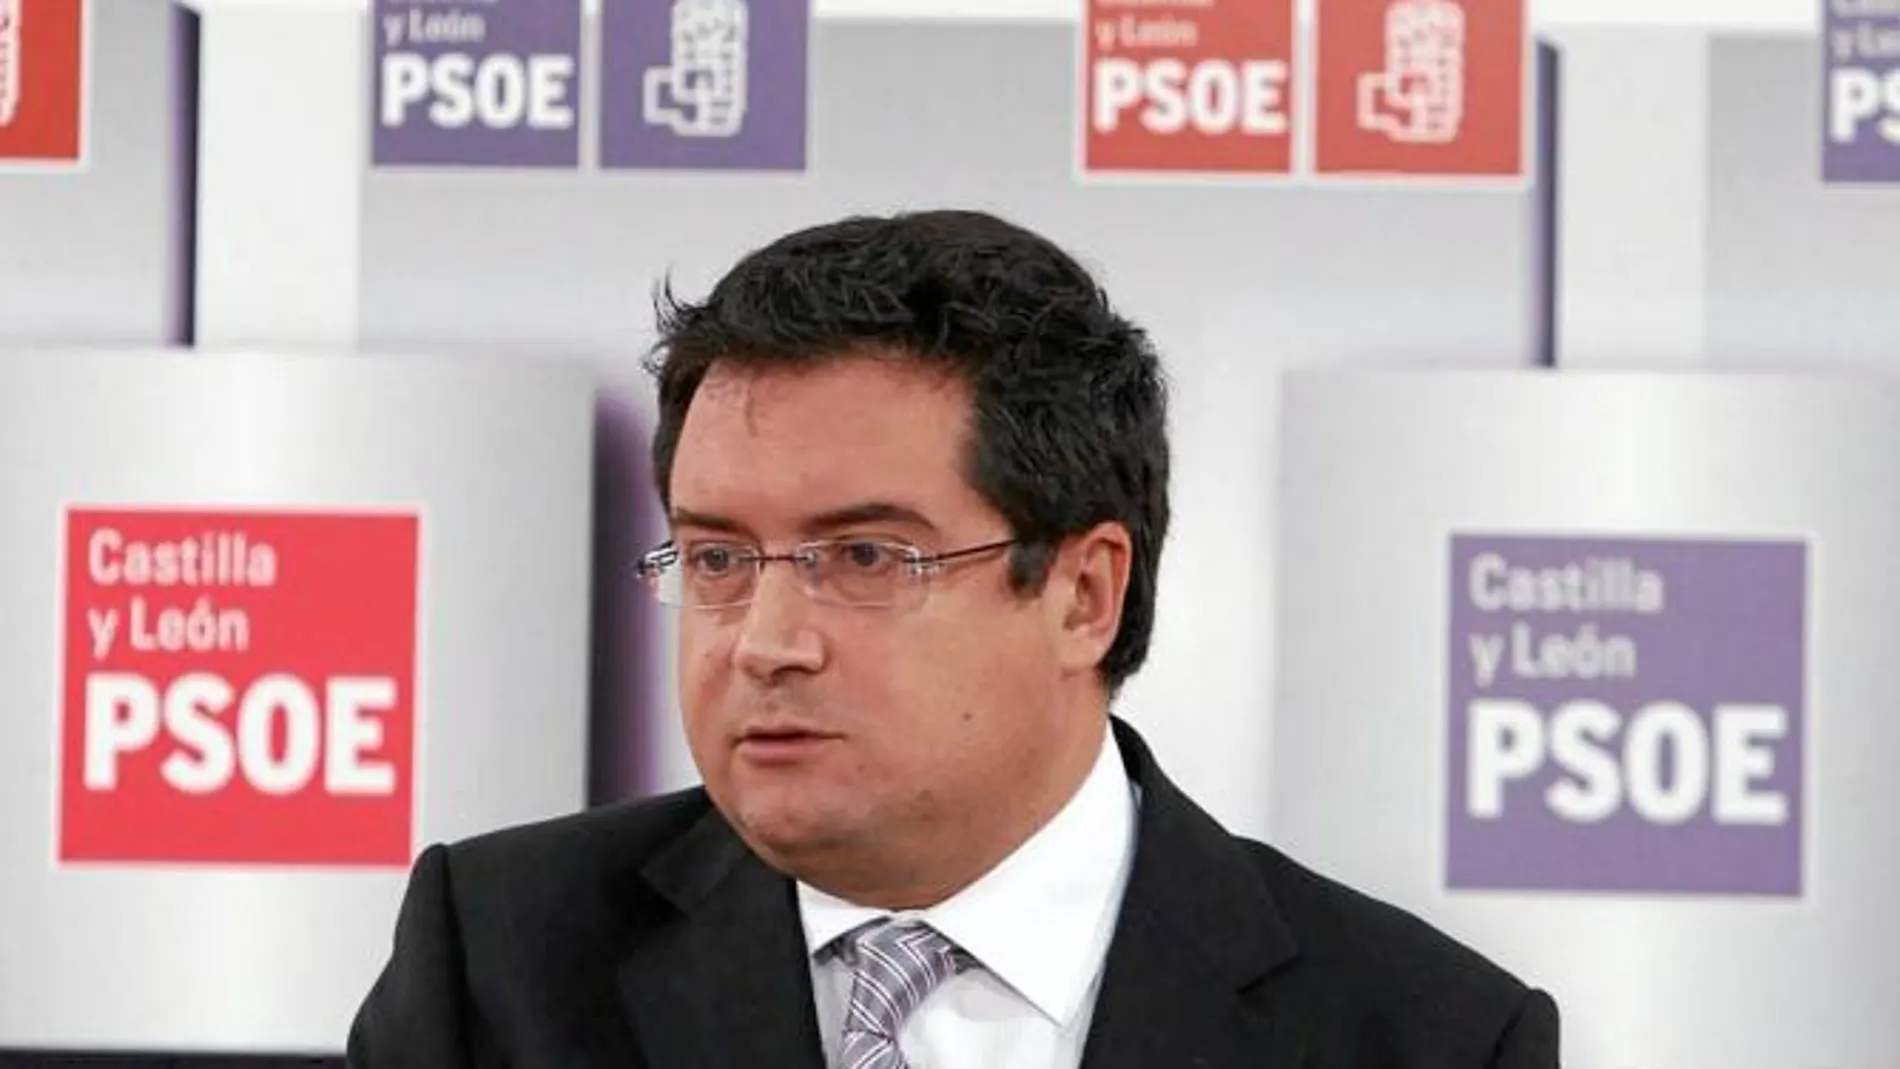 El líder socialista, Óscar López, analiza temas de actualidad en la Región